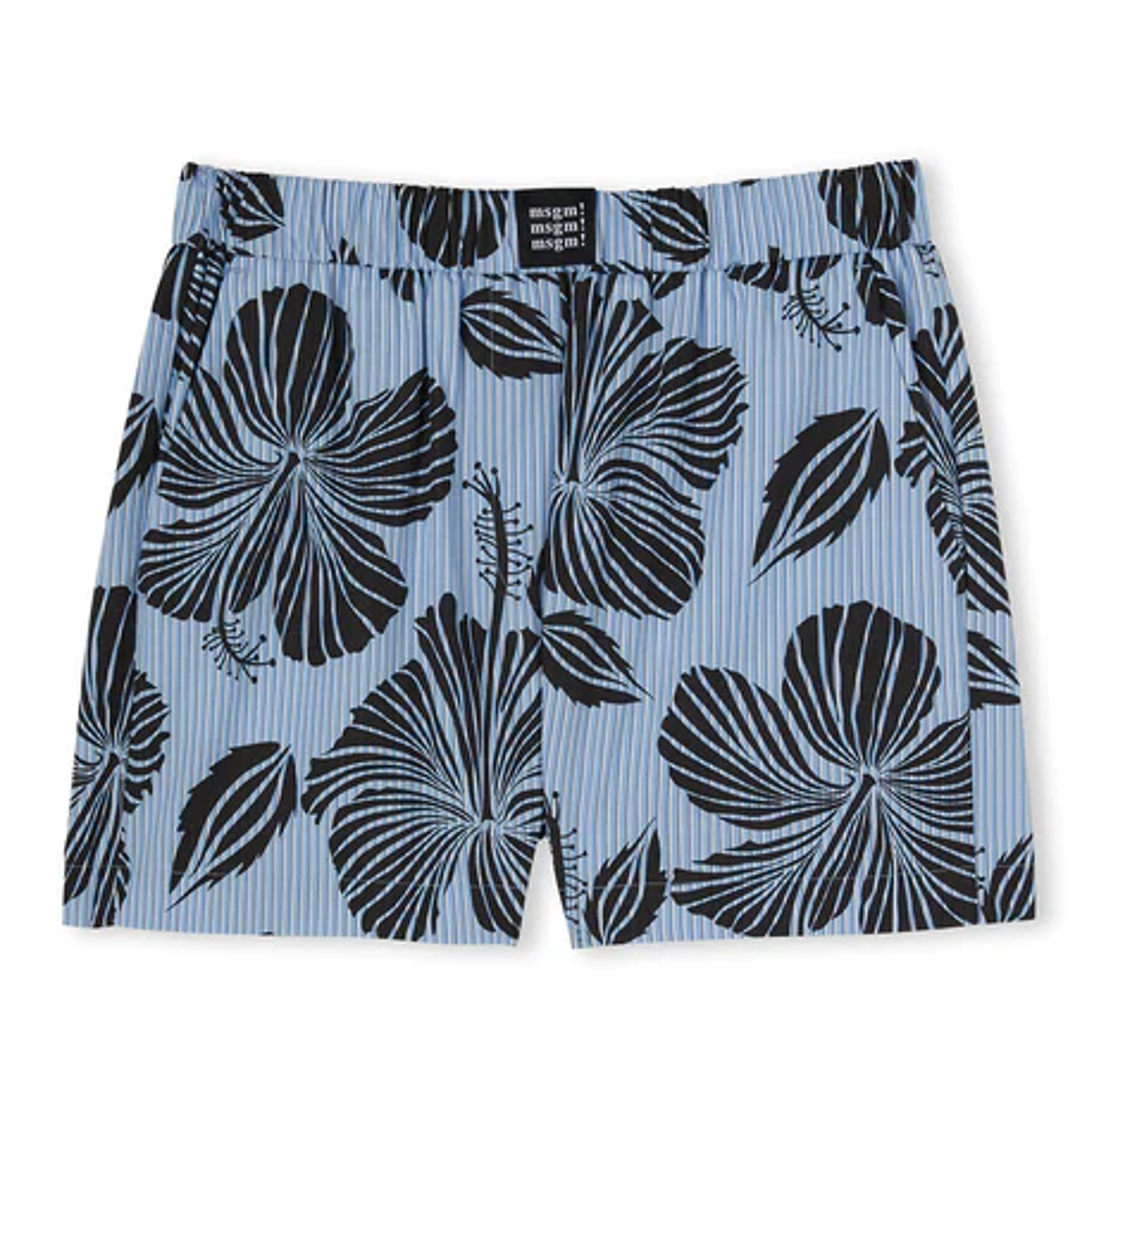 shop MSGM Sales Pantaloni: Pantaloni MSGM, shorts, elastico in vita, tasche laterali.

Composizione: 100% cotone. number 2548